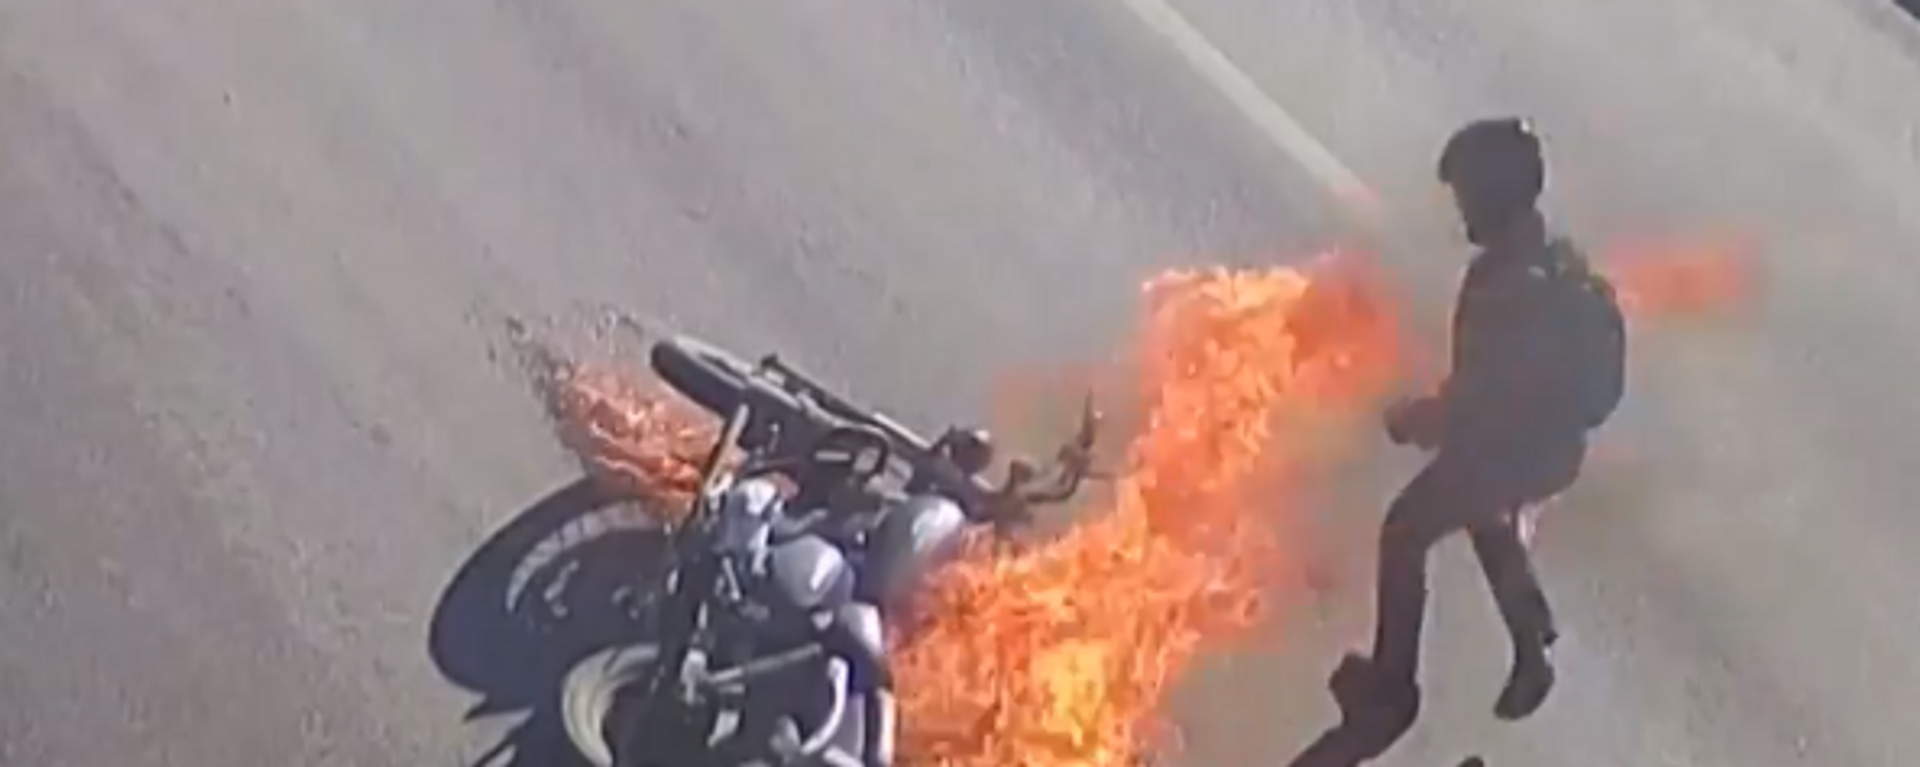 Un motociclista acaba en llamas tras caerse de la moto - Sputnik Mundo, 1920, 01.05.2021